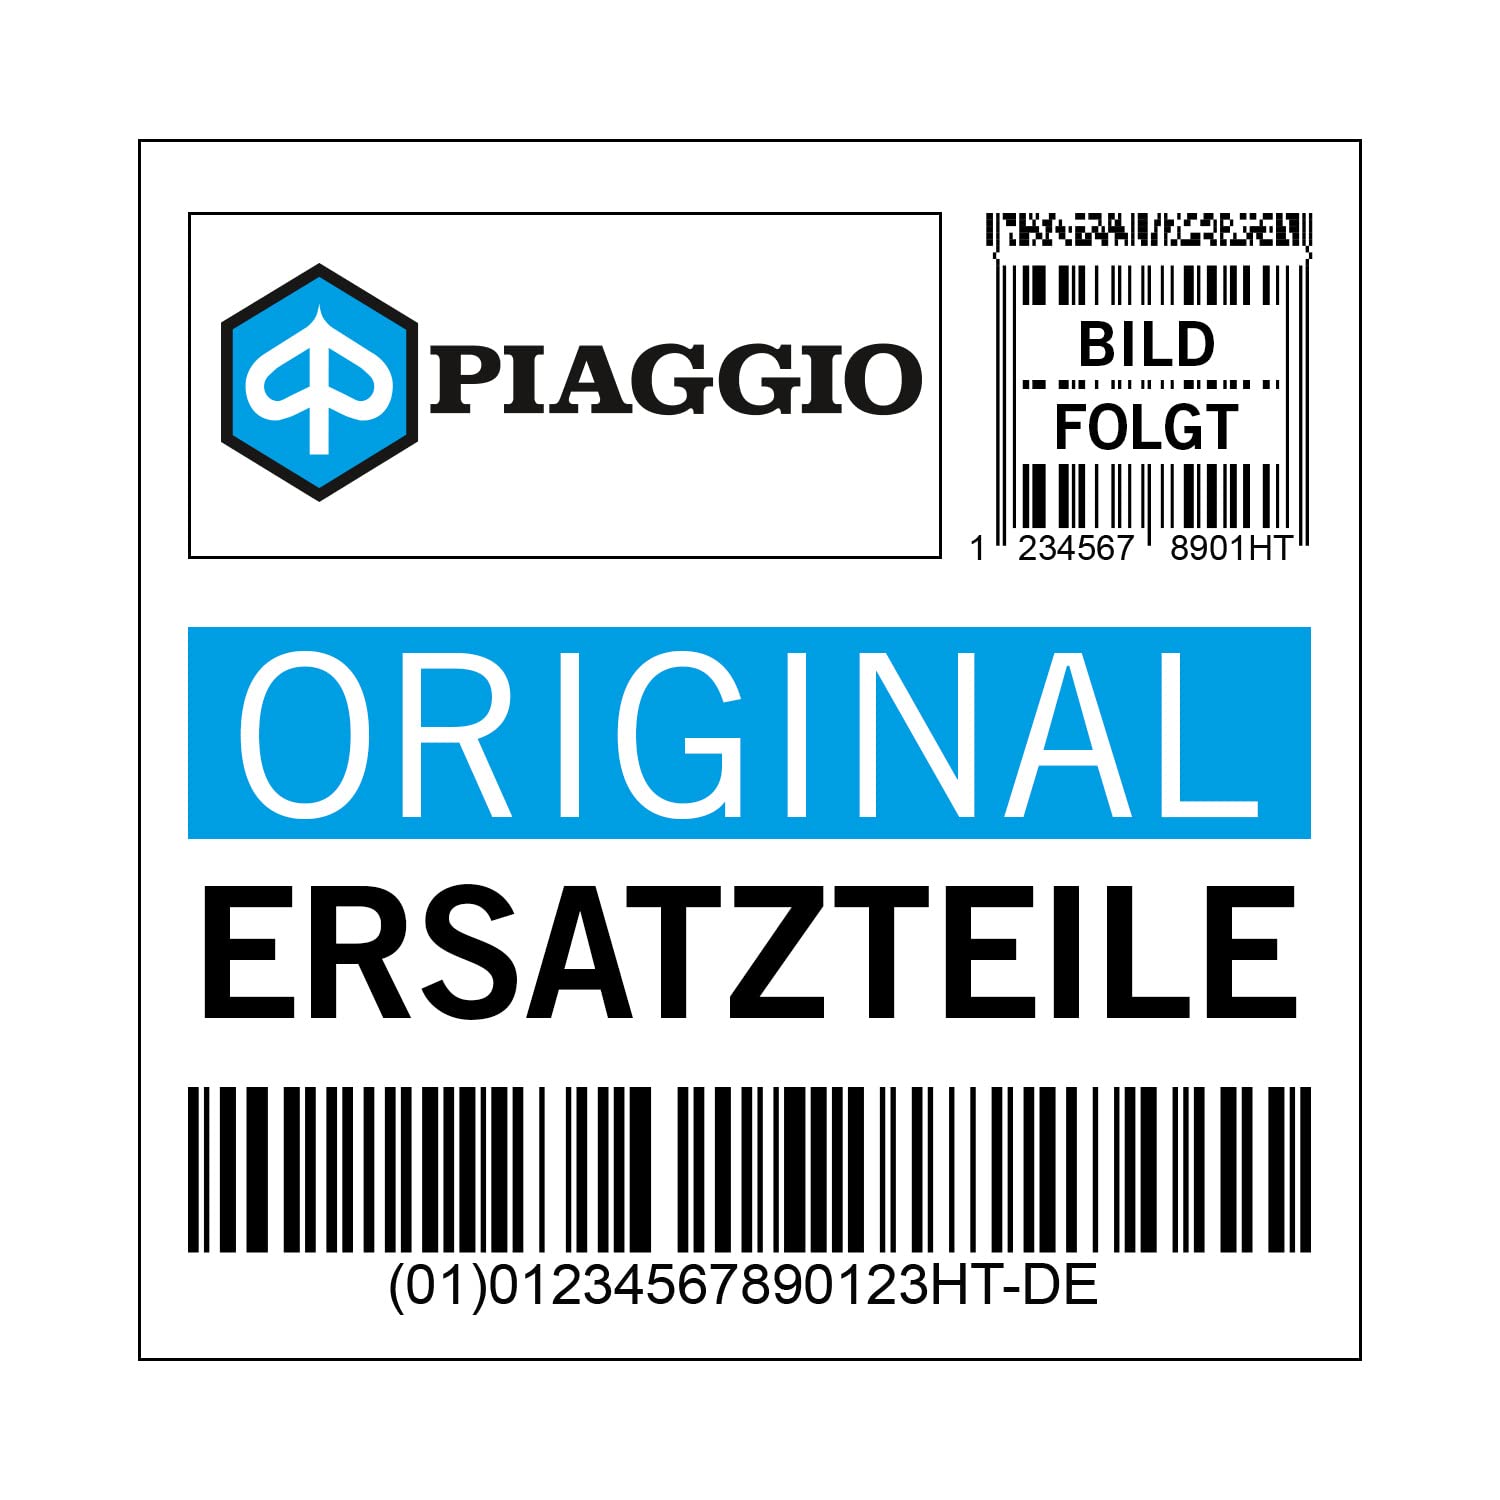 Abdeckung Piaggio, schwarz, XND 80/B nero competition, 65738500XND von Maxtuned